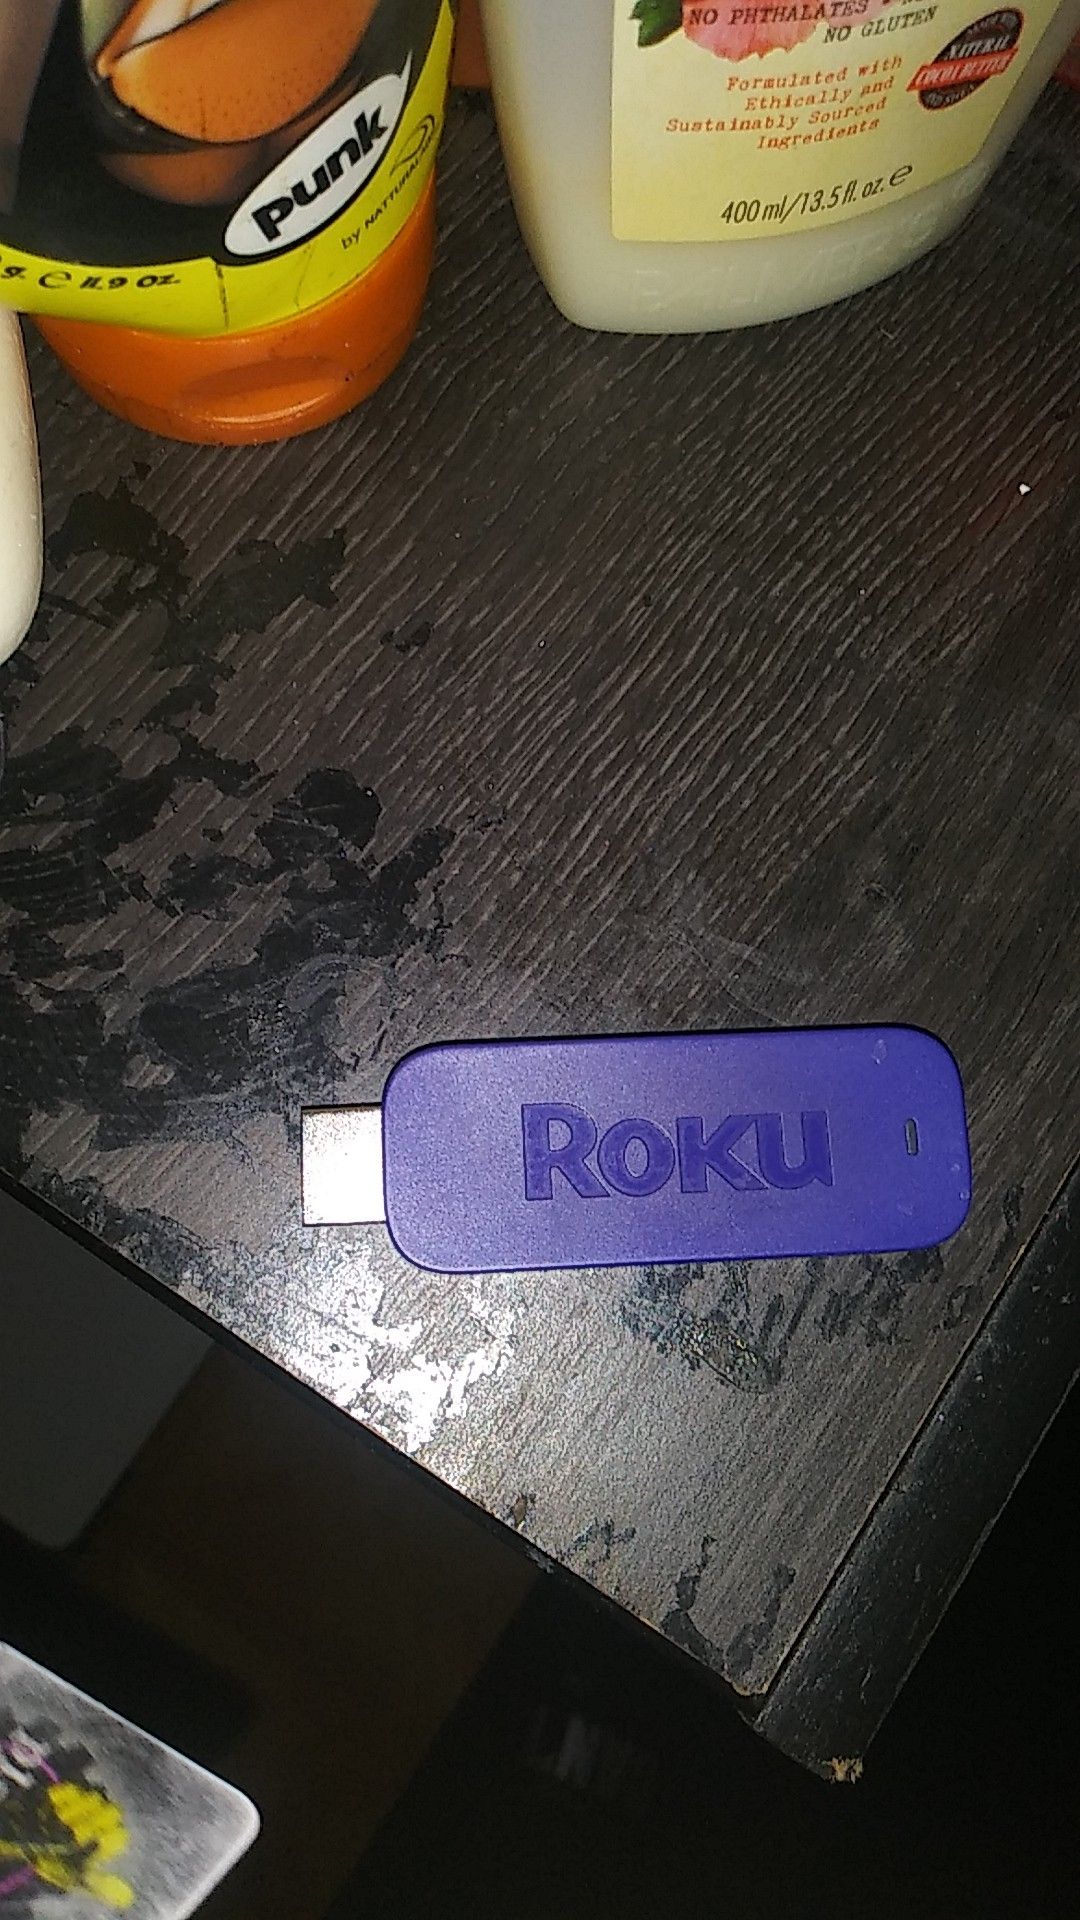 Roku stick